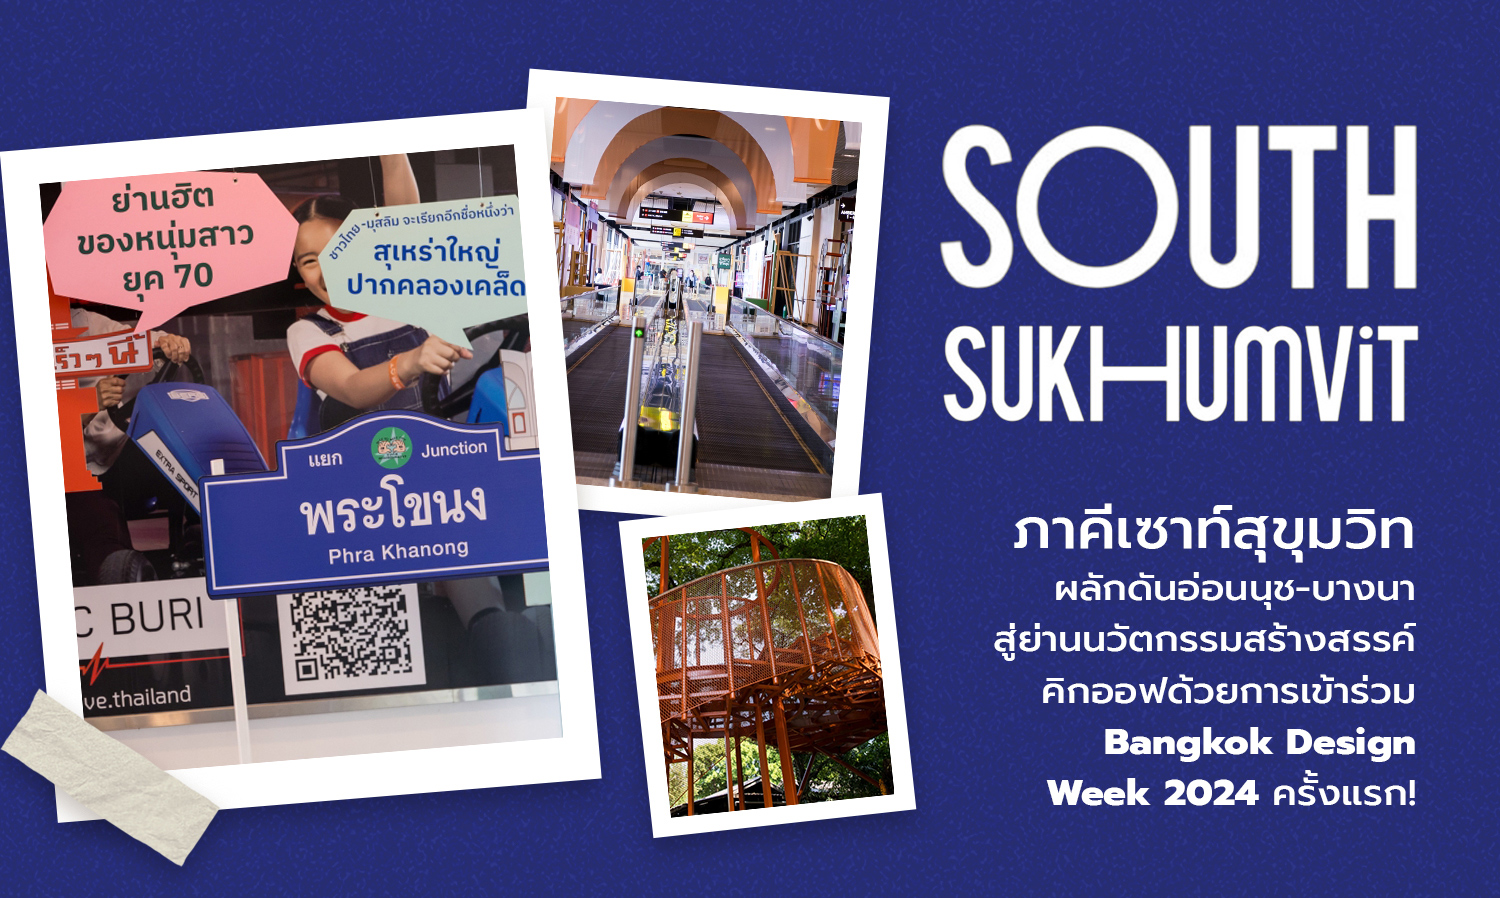 ภาคีเซาท์สุขุมวิท (South Sukhumvit) ผลักดันอ่อนนุช-บางนา สู่ย่านนวัตกรรมสร้างสรรค์   คิกออฟด้วยการเข้าร่วม Bangkok Design Week 2024 ครั้งแรก